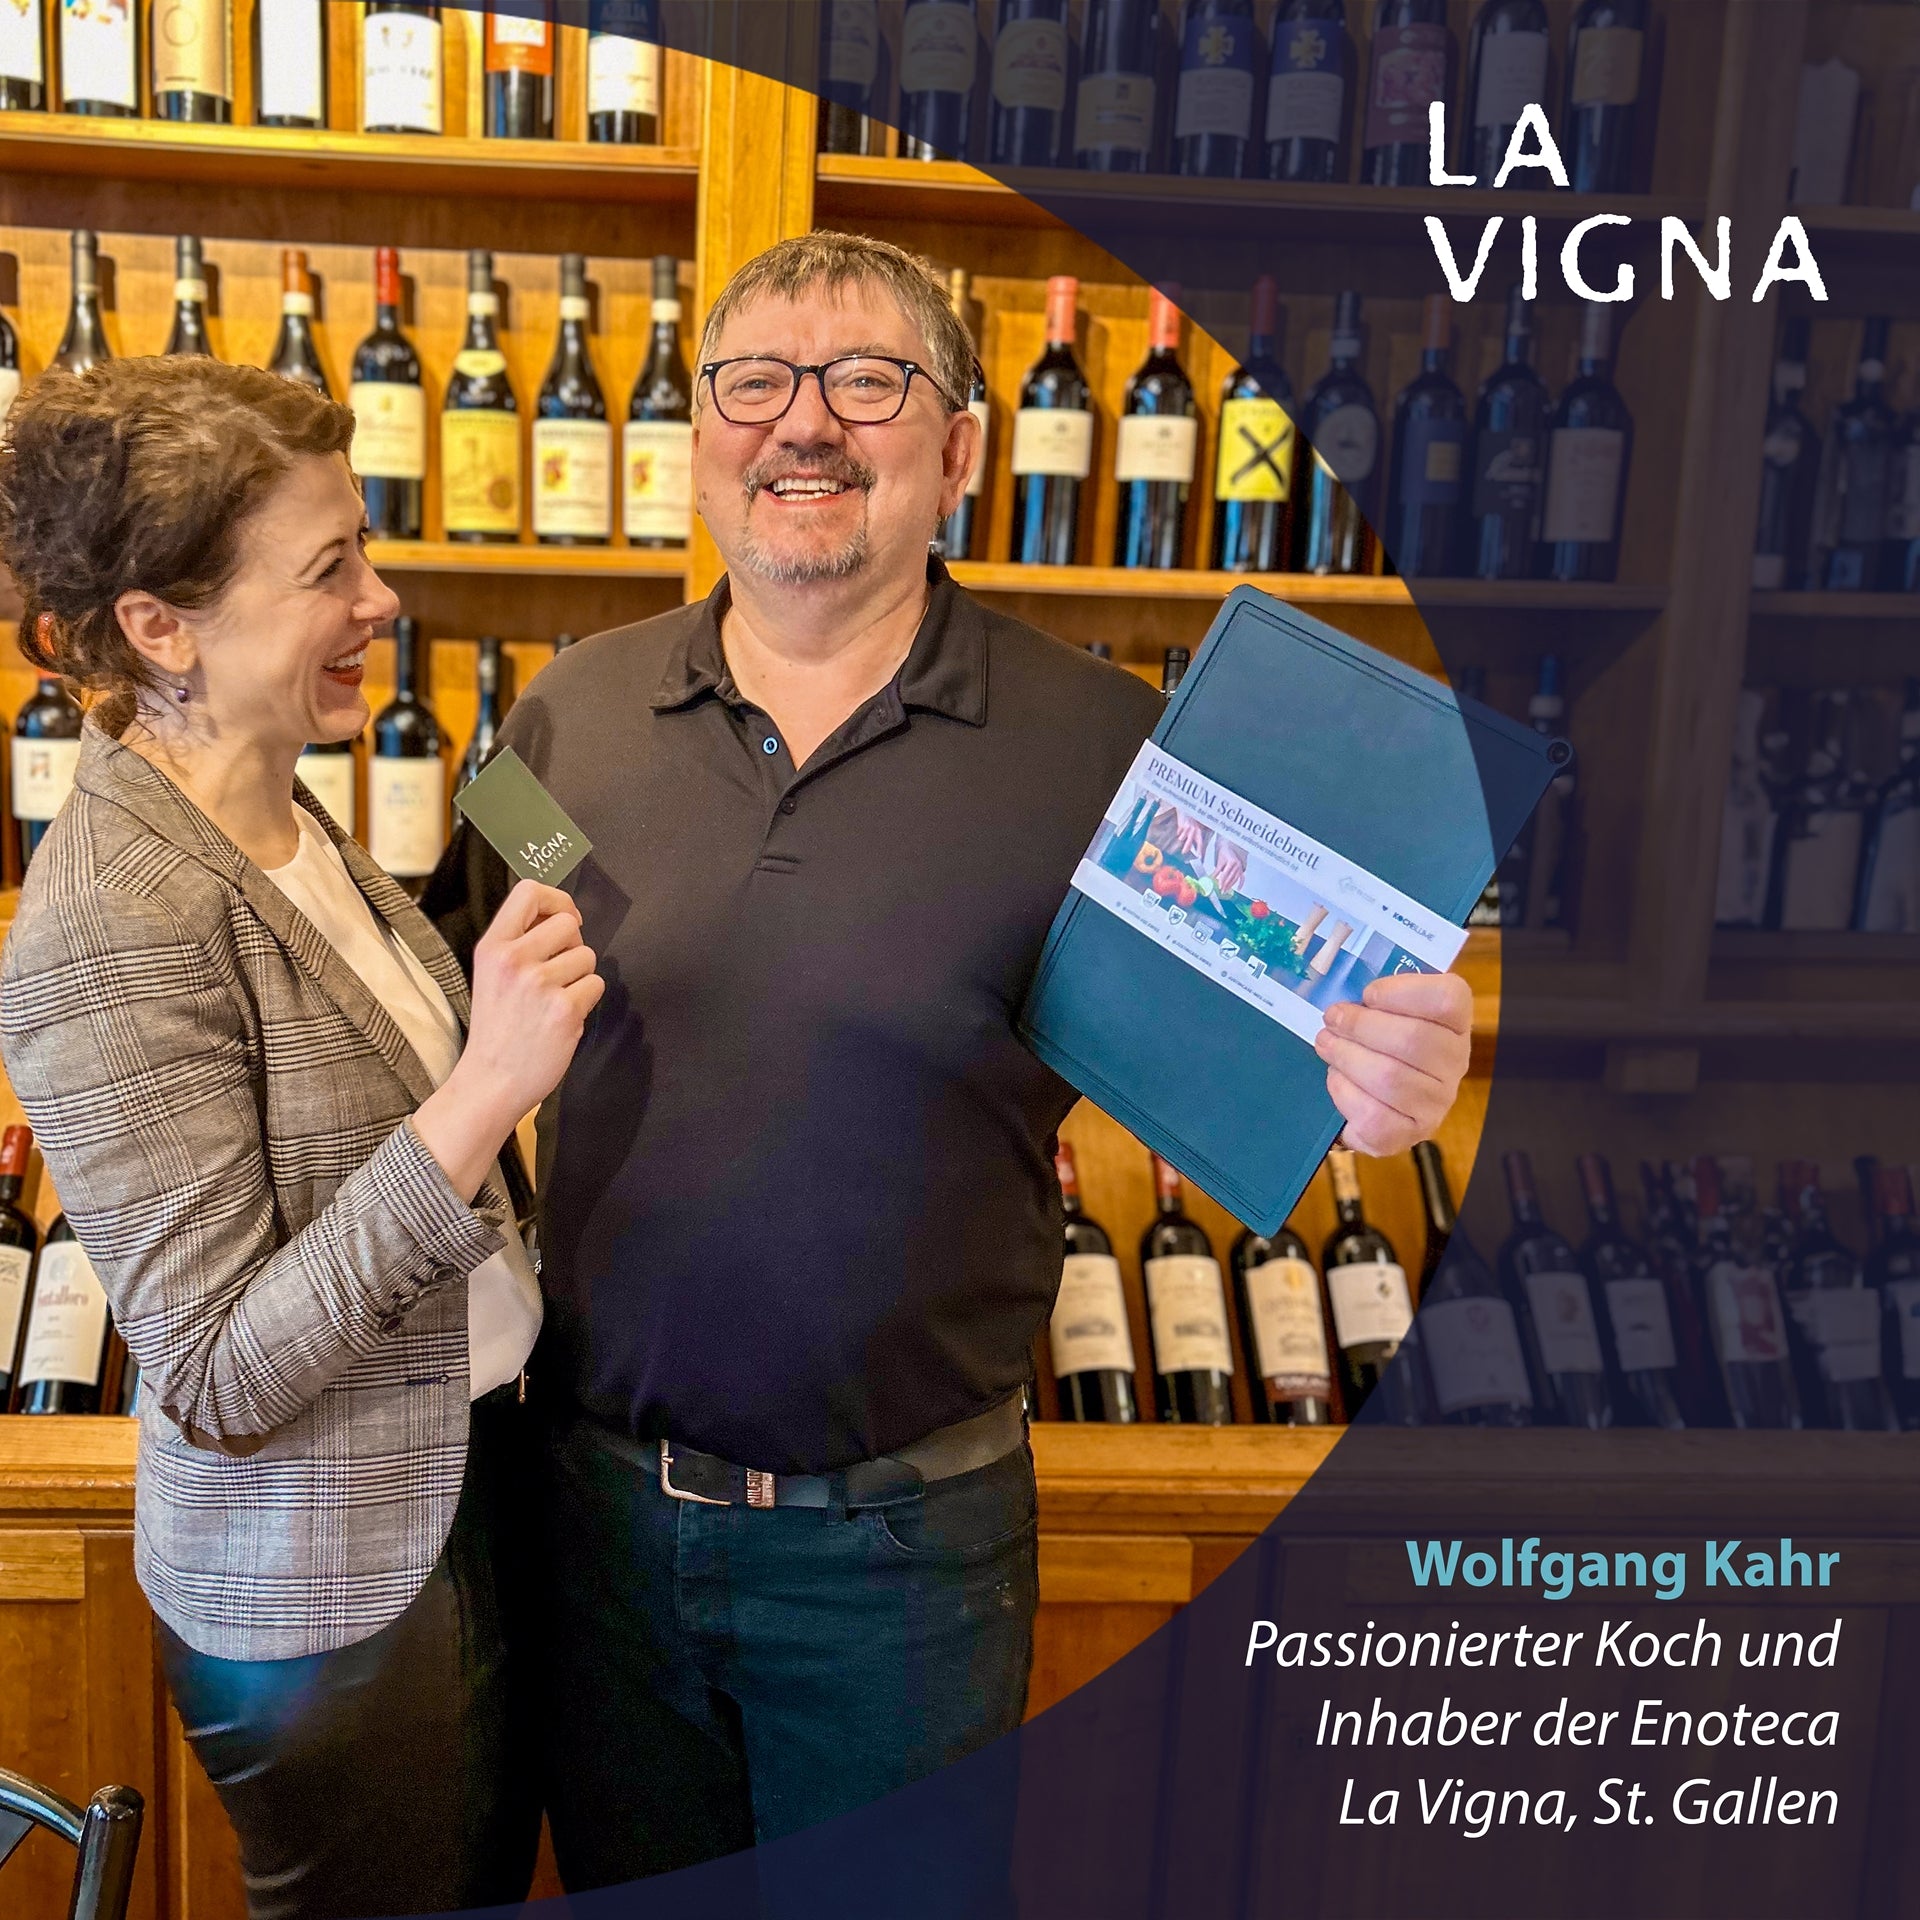 Wolfgang Kahr – Passionierter Koch und Inhaber der Enoteca La Vigna, St. Gallen